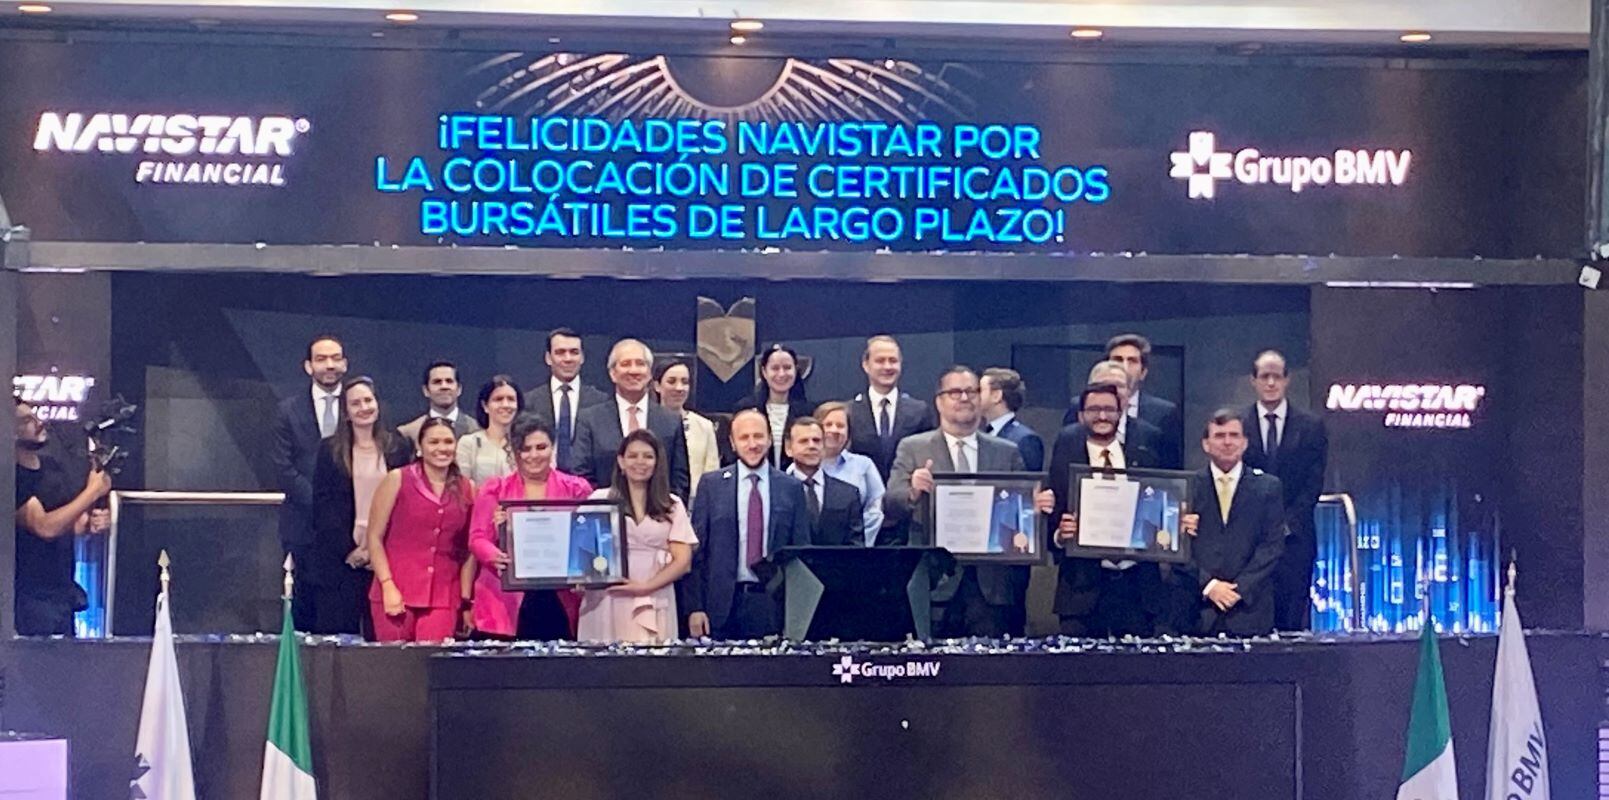 Navistar Financial México coloca 2 mmdp en certificados bursátiles